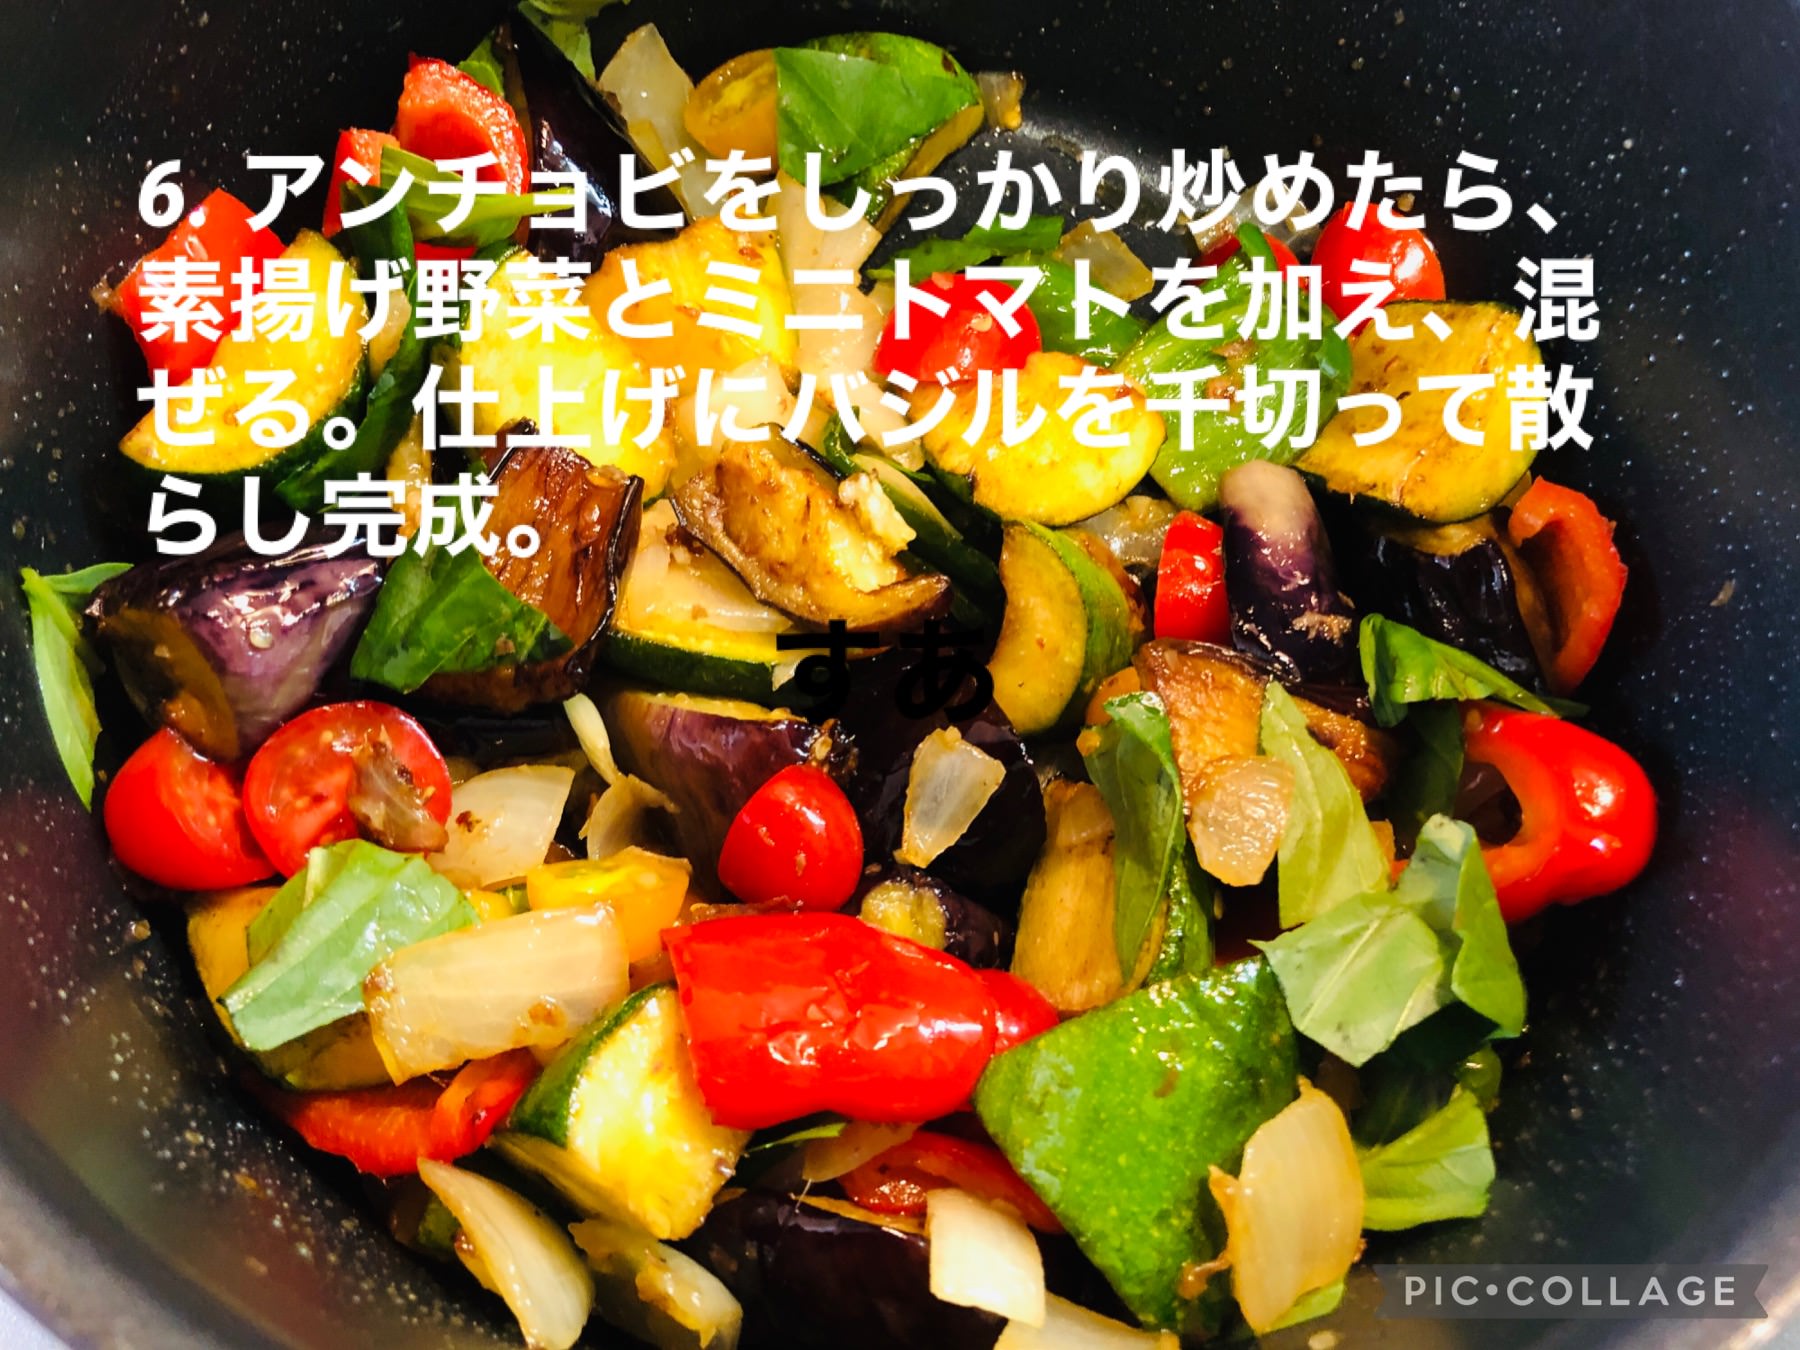 フライパンに素揚げした野菜、プチトマト、を加え混ぜ、バジルを散らした画像です